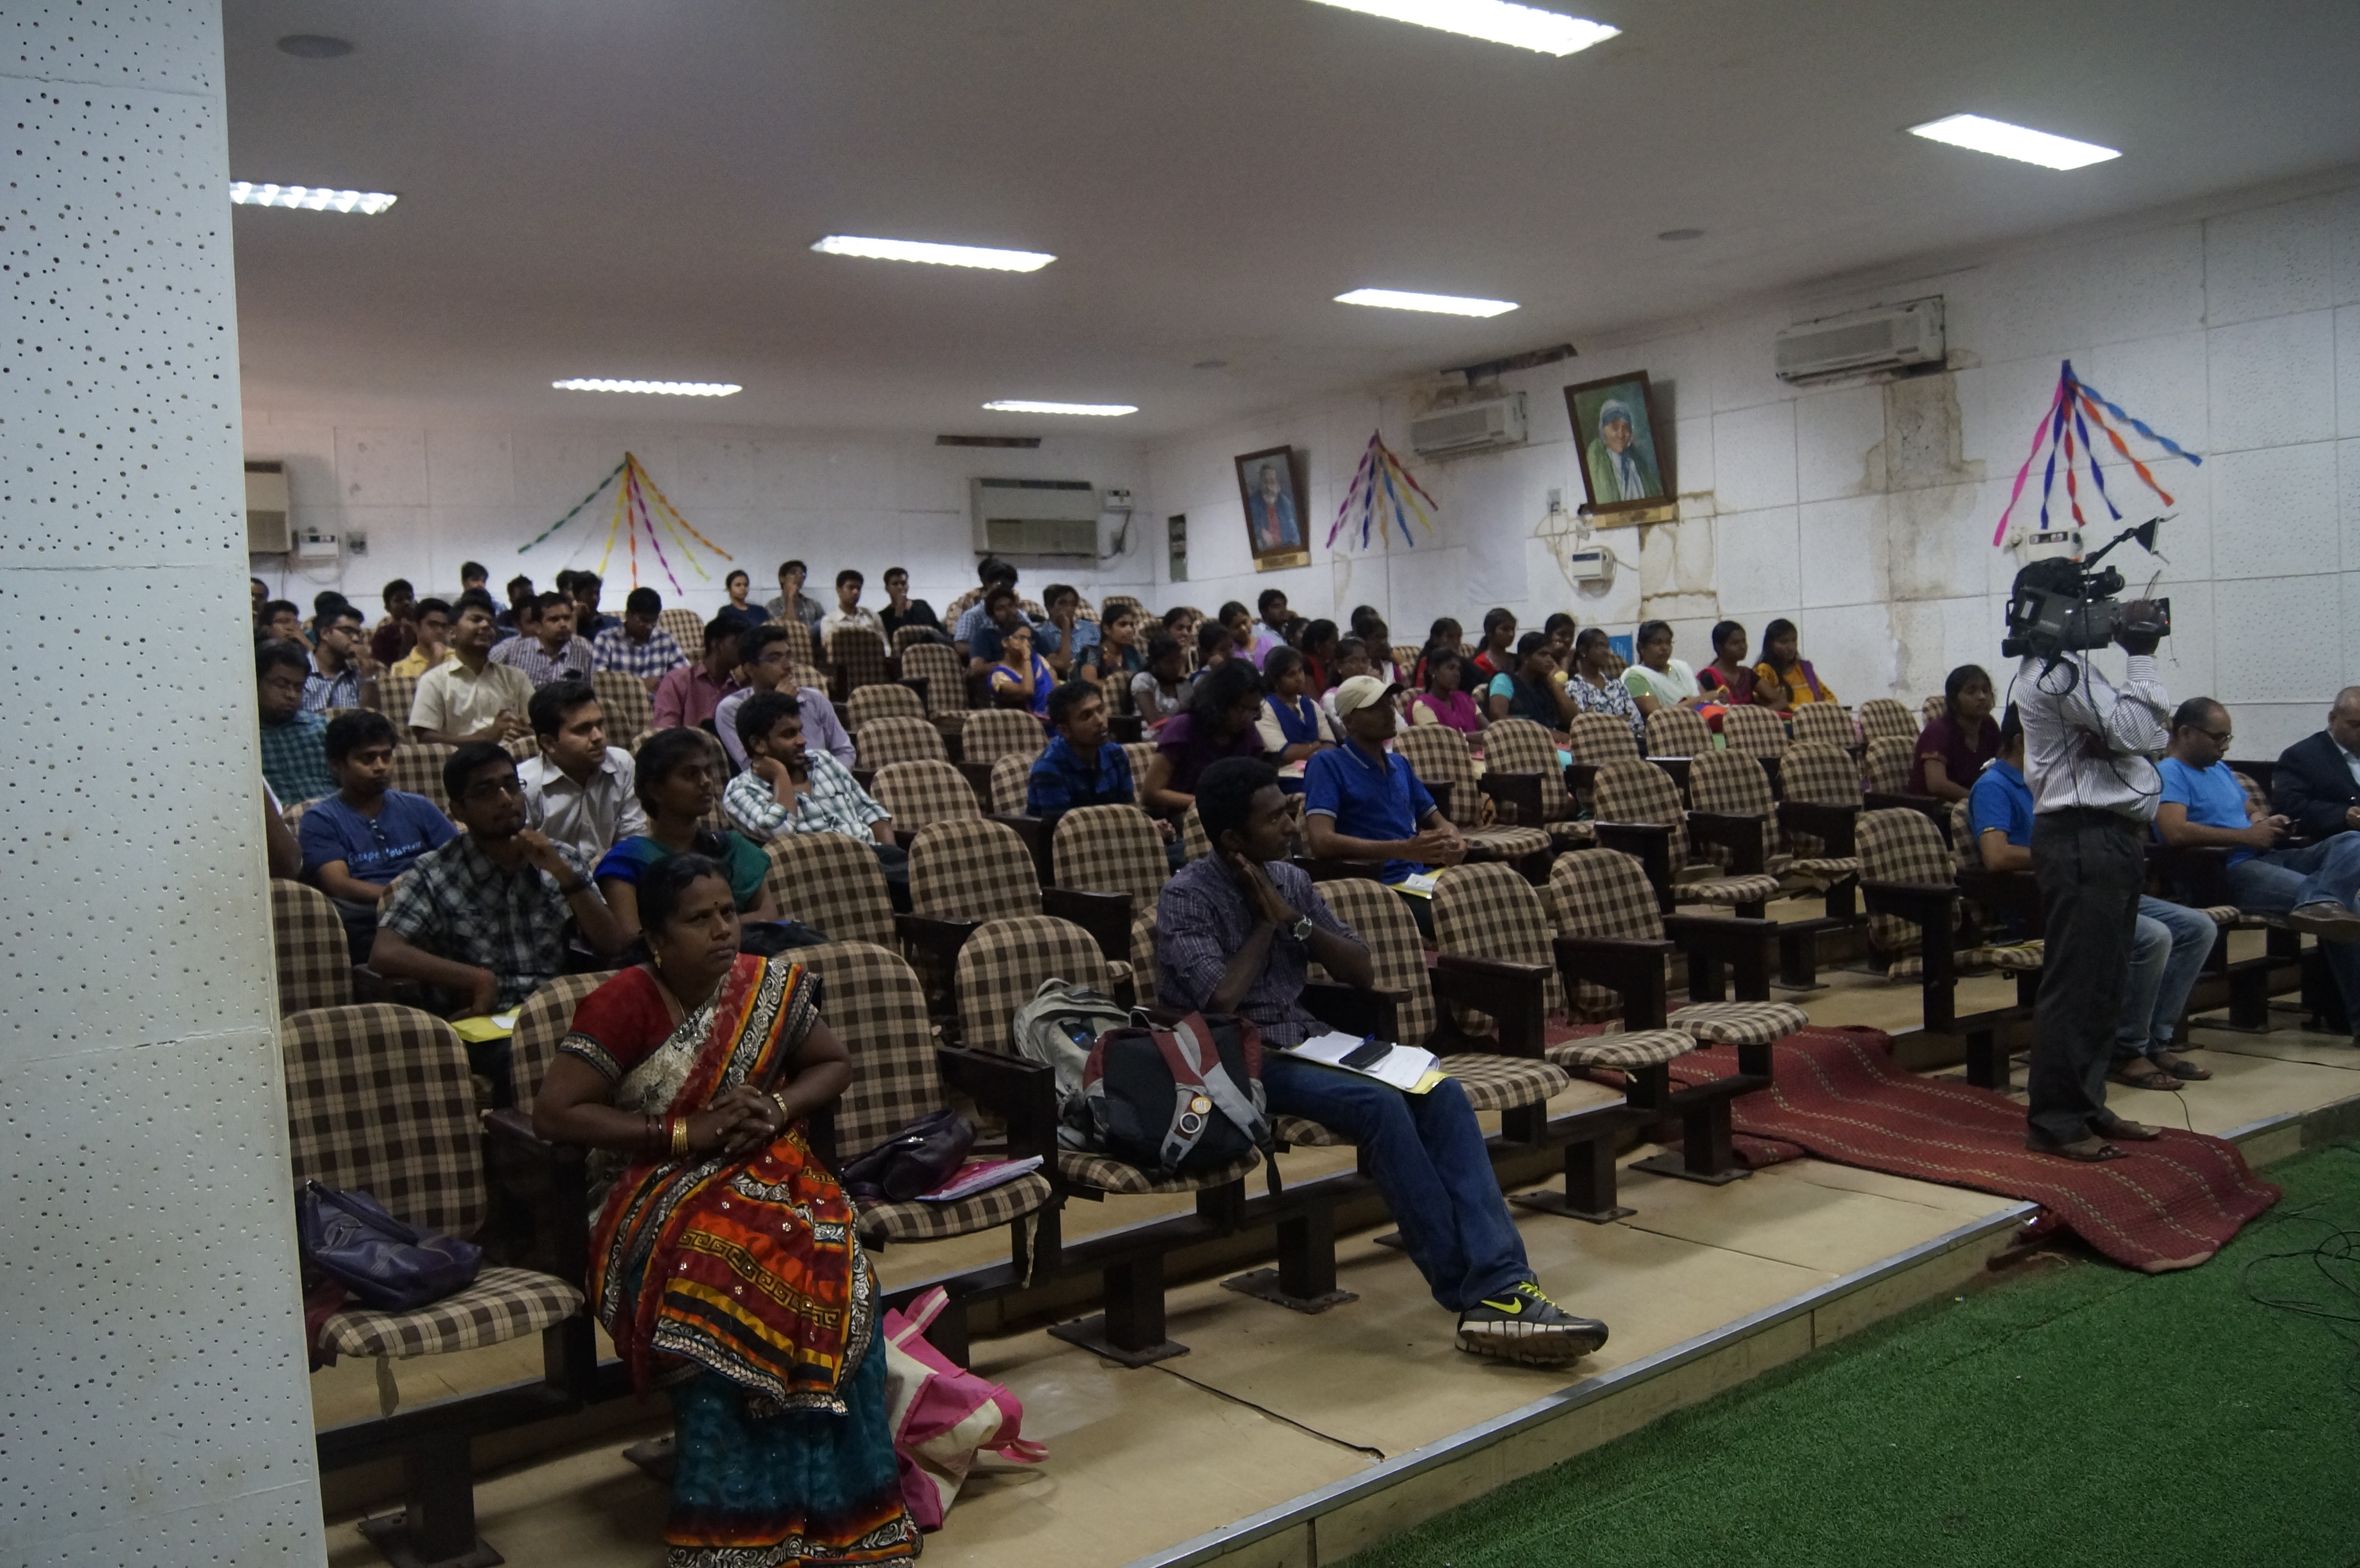 Thinking Social Seminar Tiruchirapalli